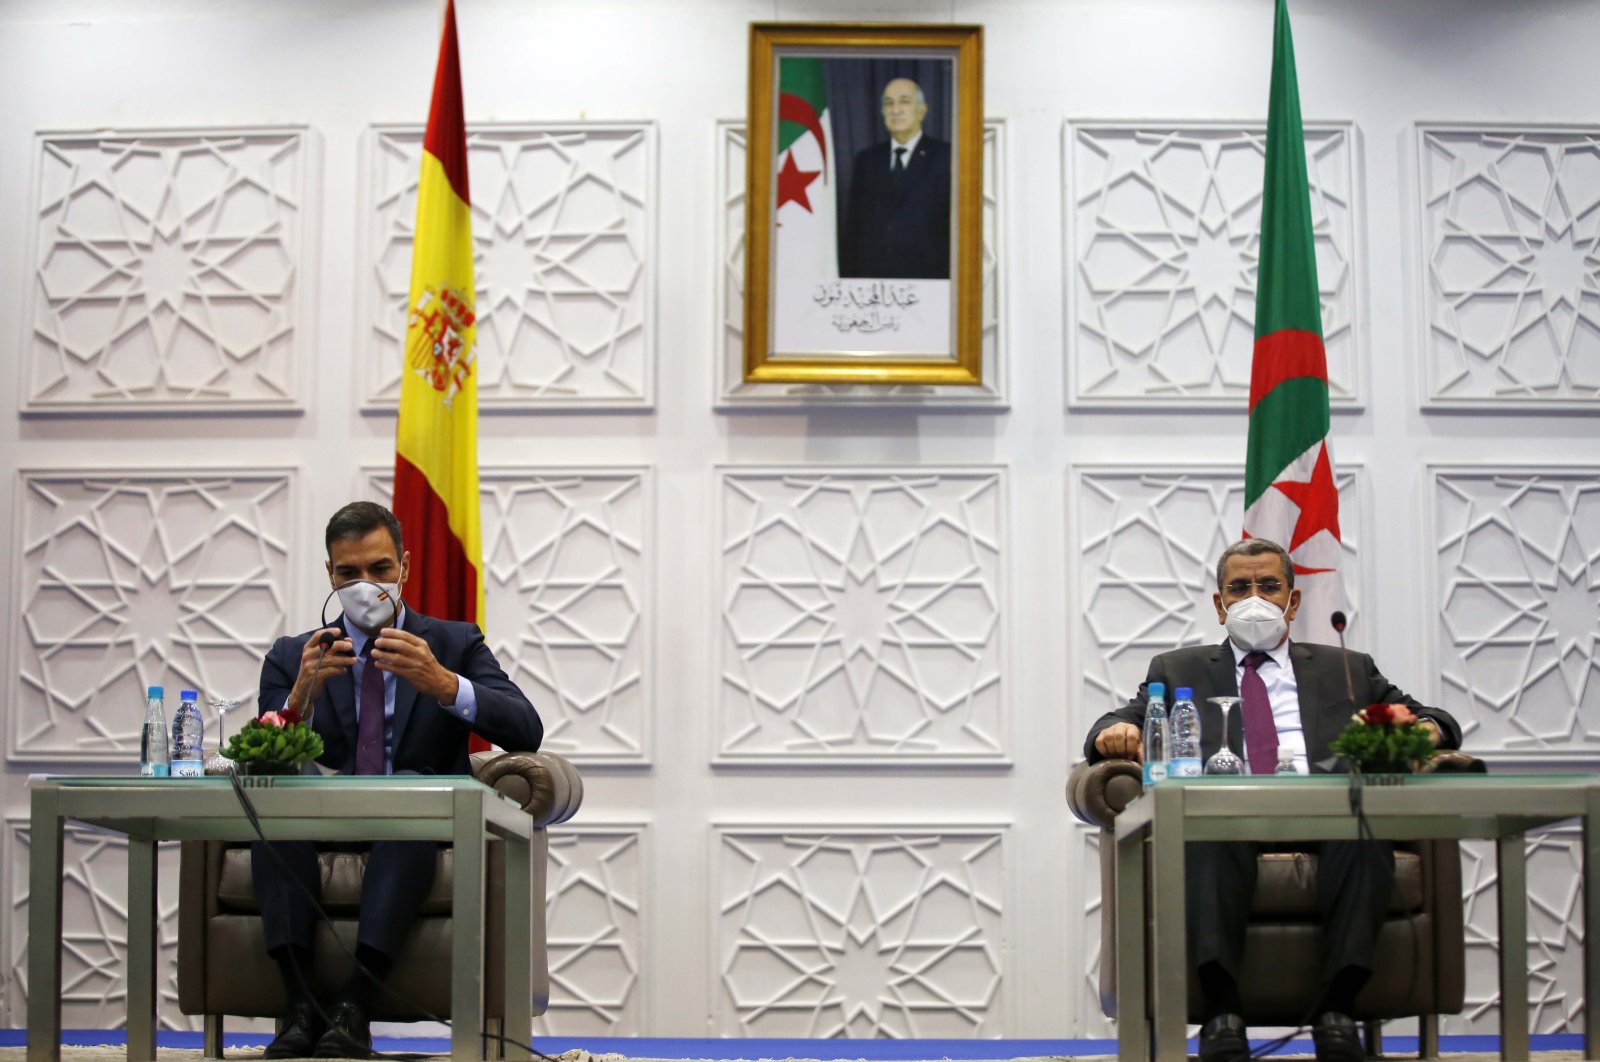 Spanish Prime Minister Pedro Sanchez (L) and Algerian Prime Minister Abdelaziz Djerad attend the Algero Spanish Economic Forum, in Algiers, Algeria, Oct. 8, 2020. (Getty Images Photo)